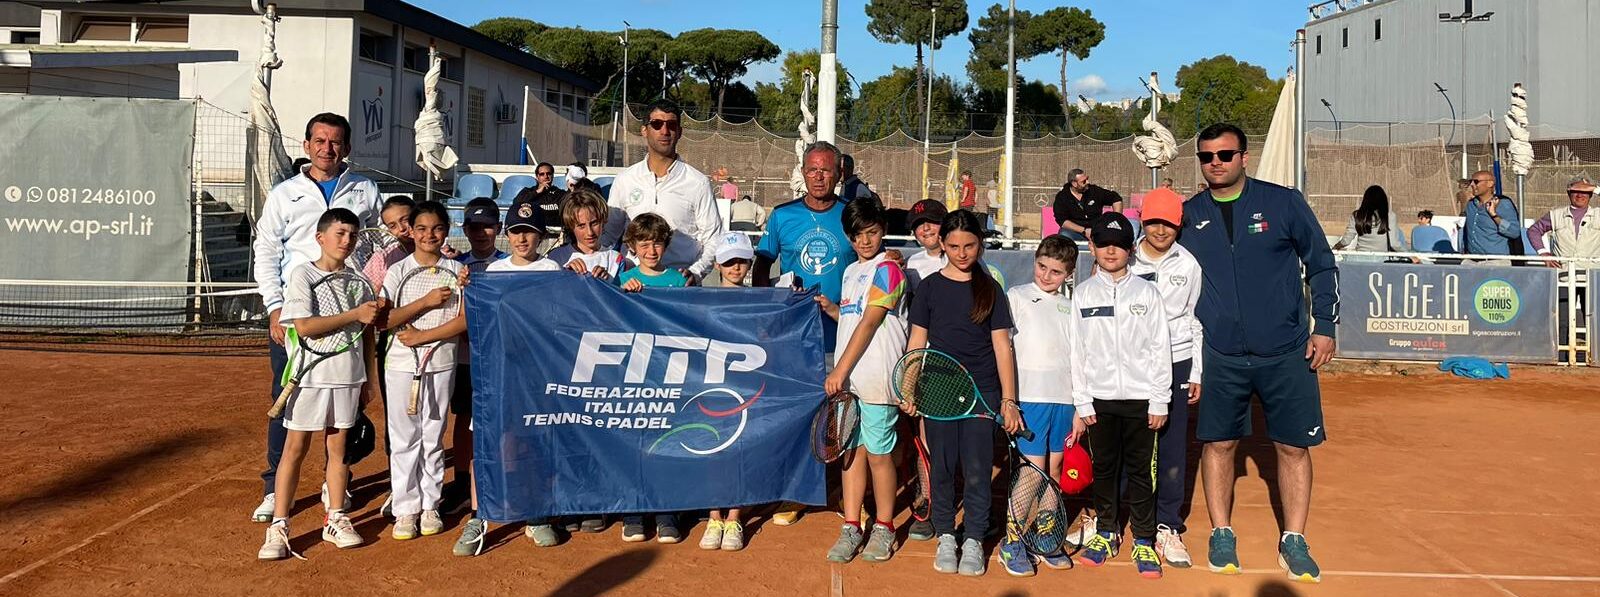 COPPA PROMO, l’Accademia Tennis Napoli protagonista di una domenica da ricordare